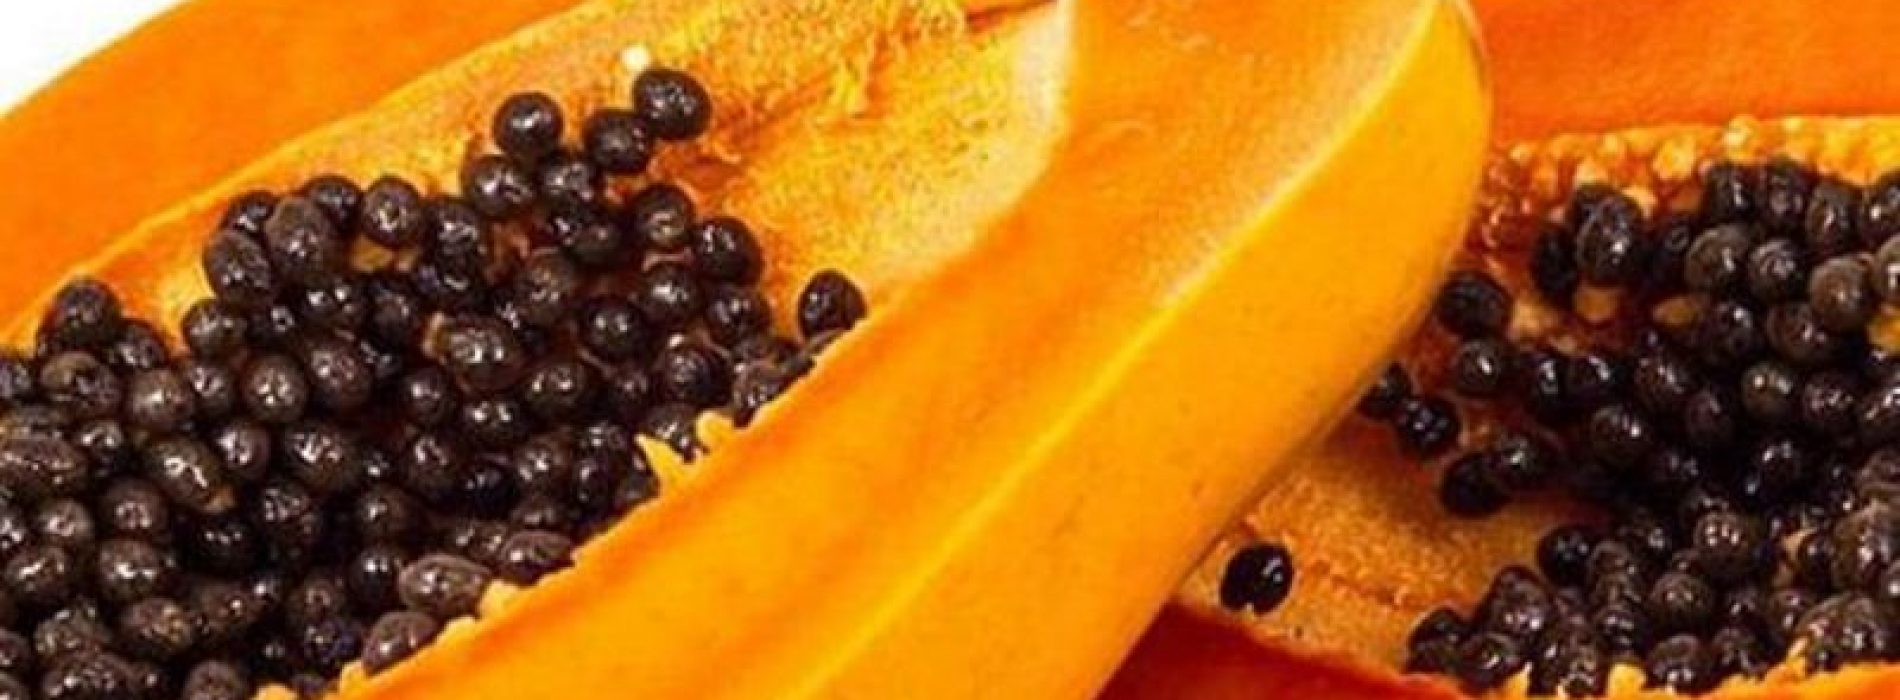 Wees niet zo snel om papaja zaden weg te gooien – ze bieden een verrassend aantal voordelen voor de gezondheid